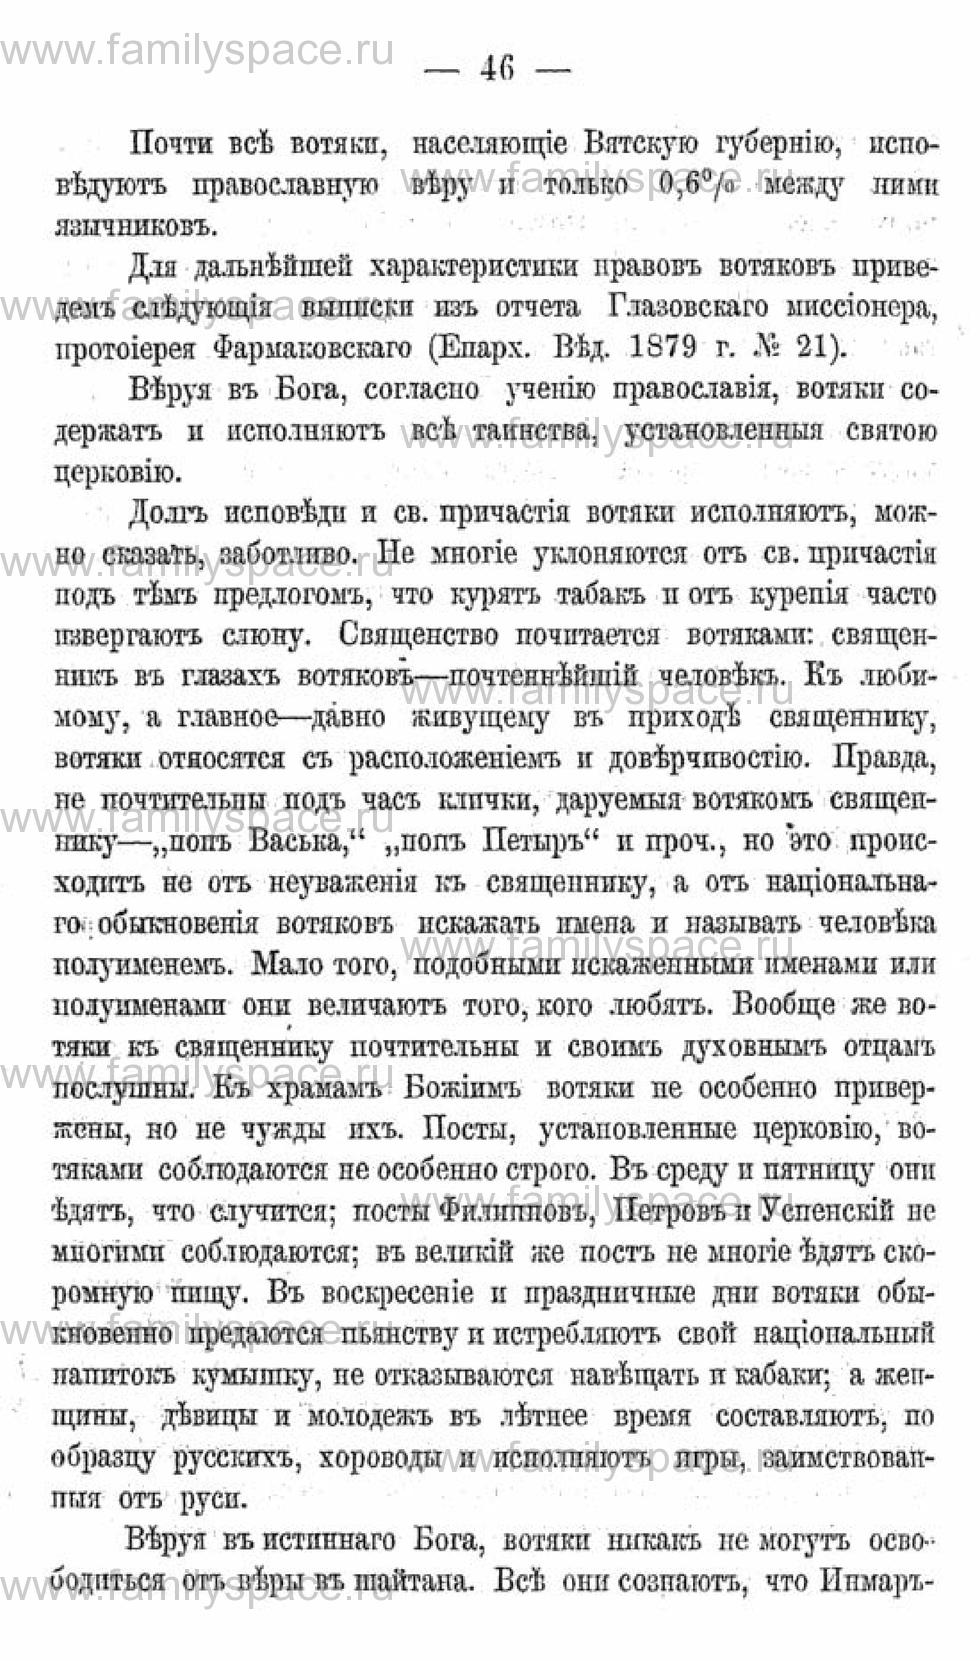 Поиск по фамилии - Календарь Вятской губернии - 1880, страница 2046